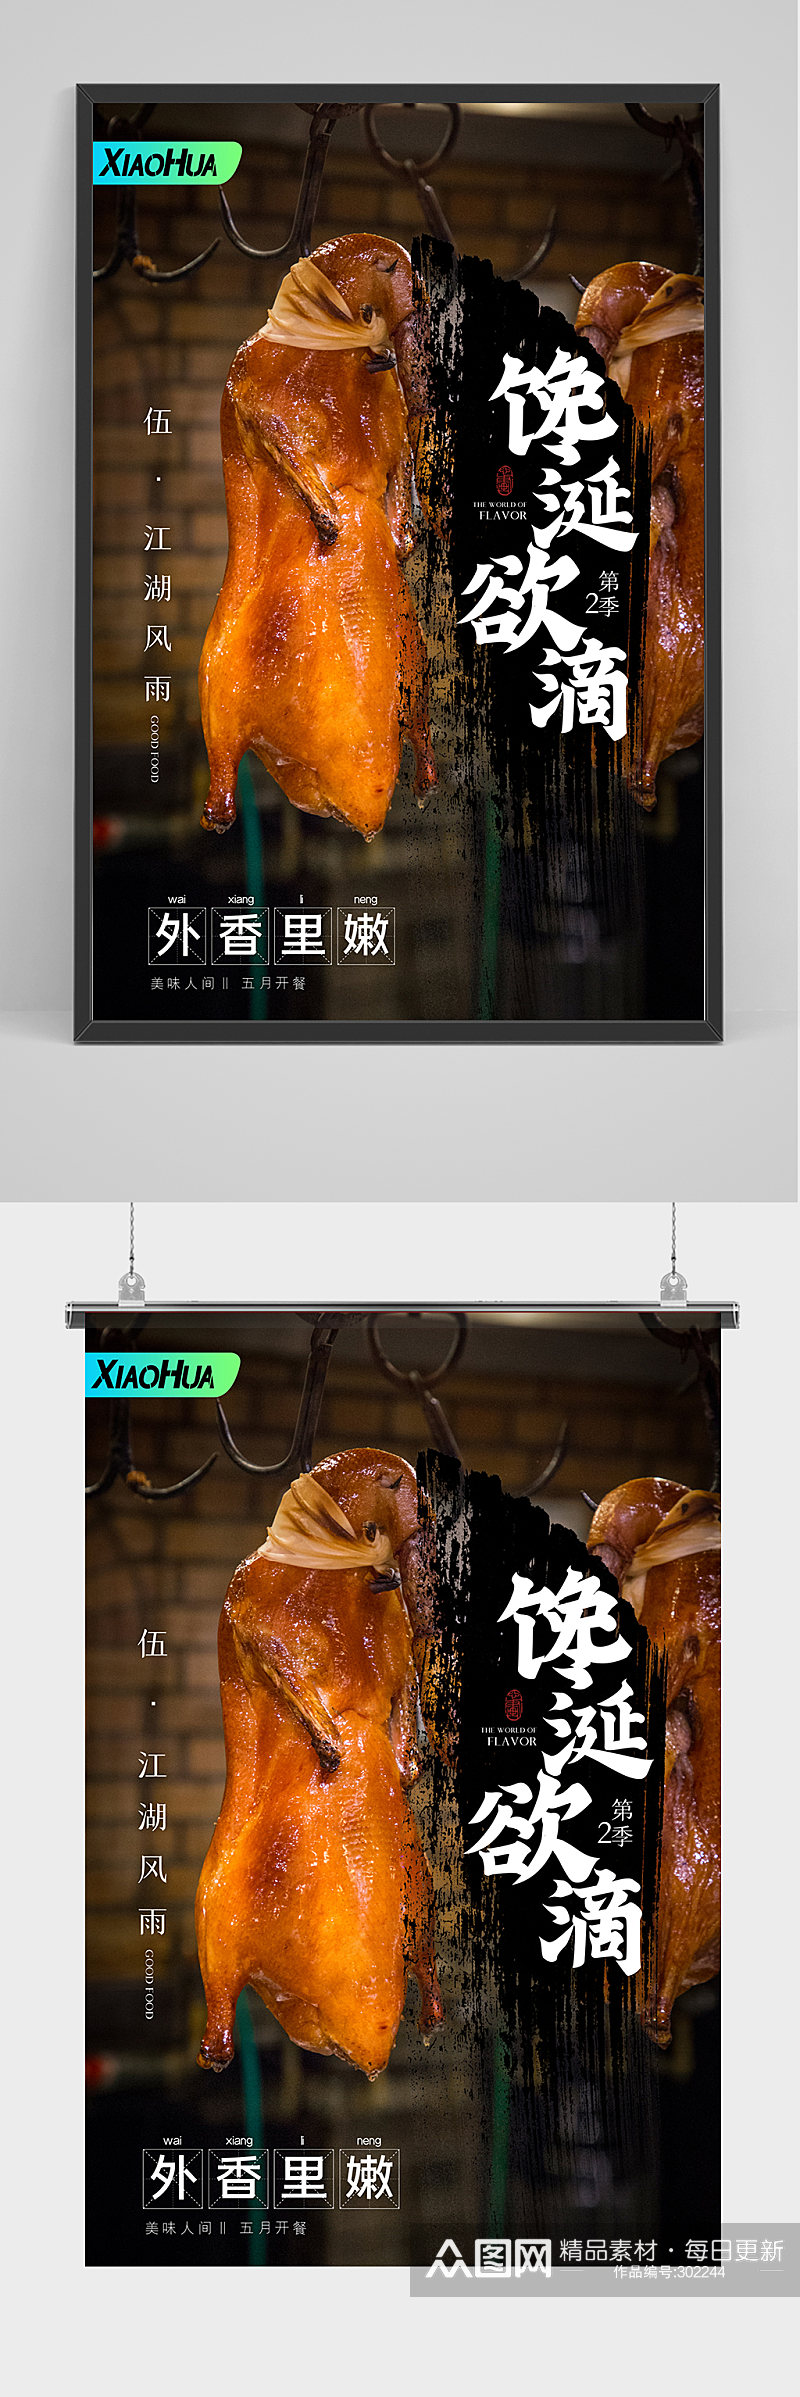 精品北京烤鸭海报设计素材